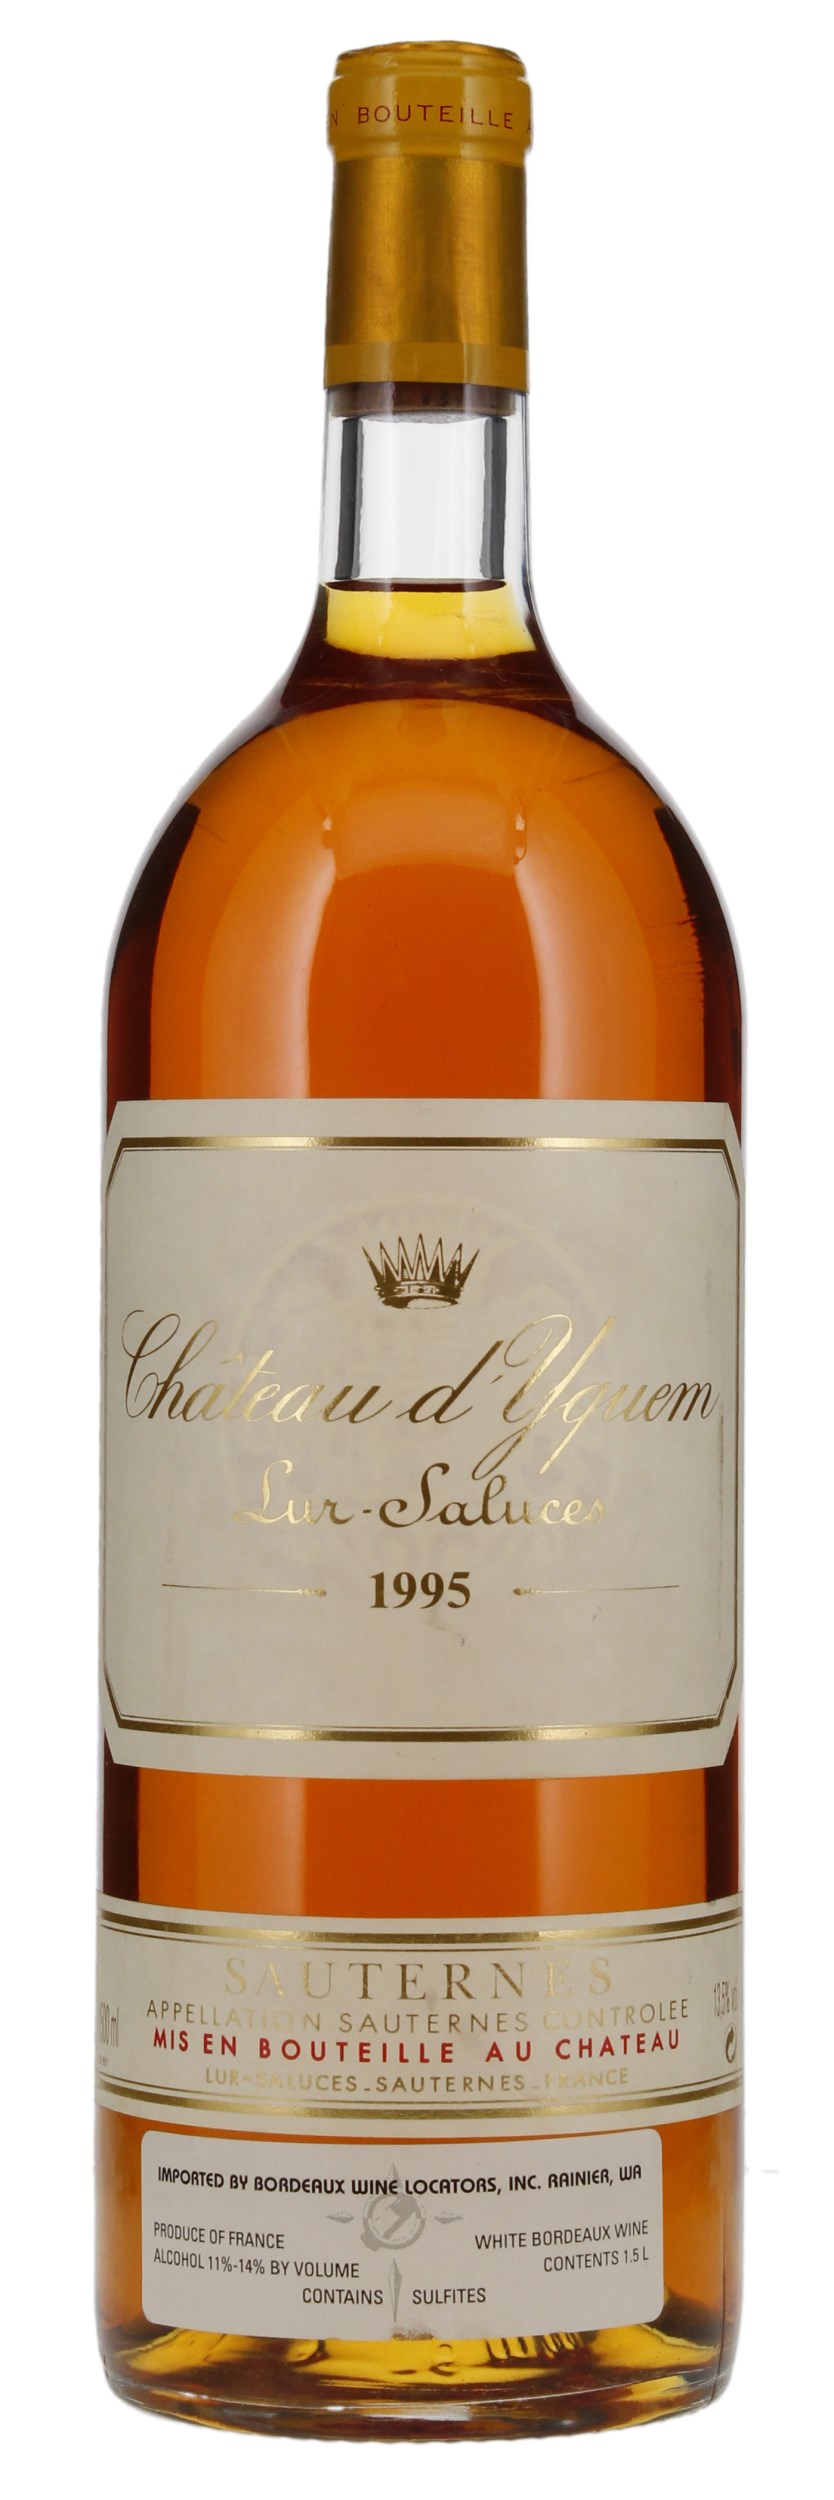 1995 Château d'Yquem, 1.5ltr